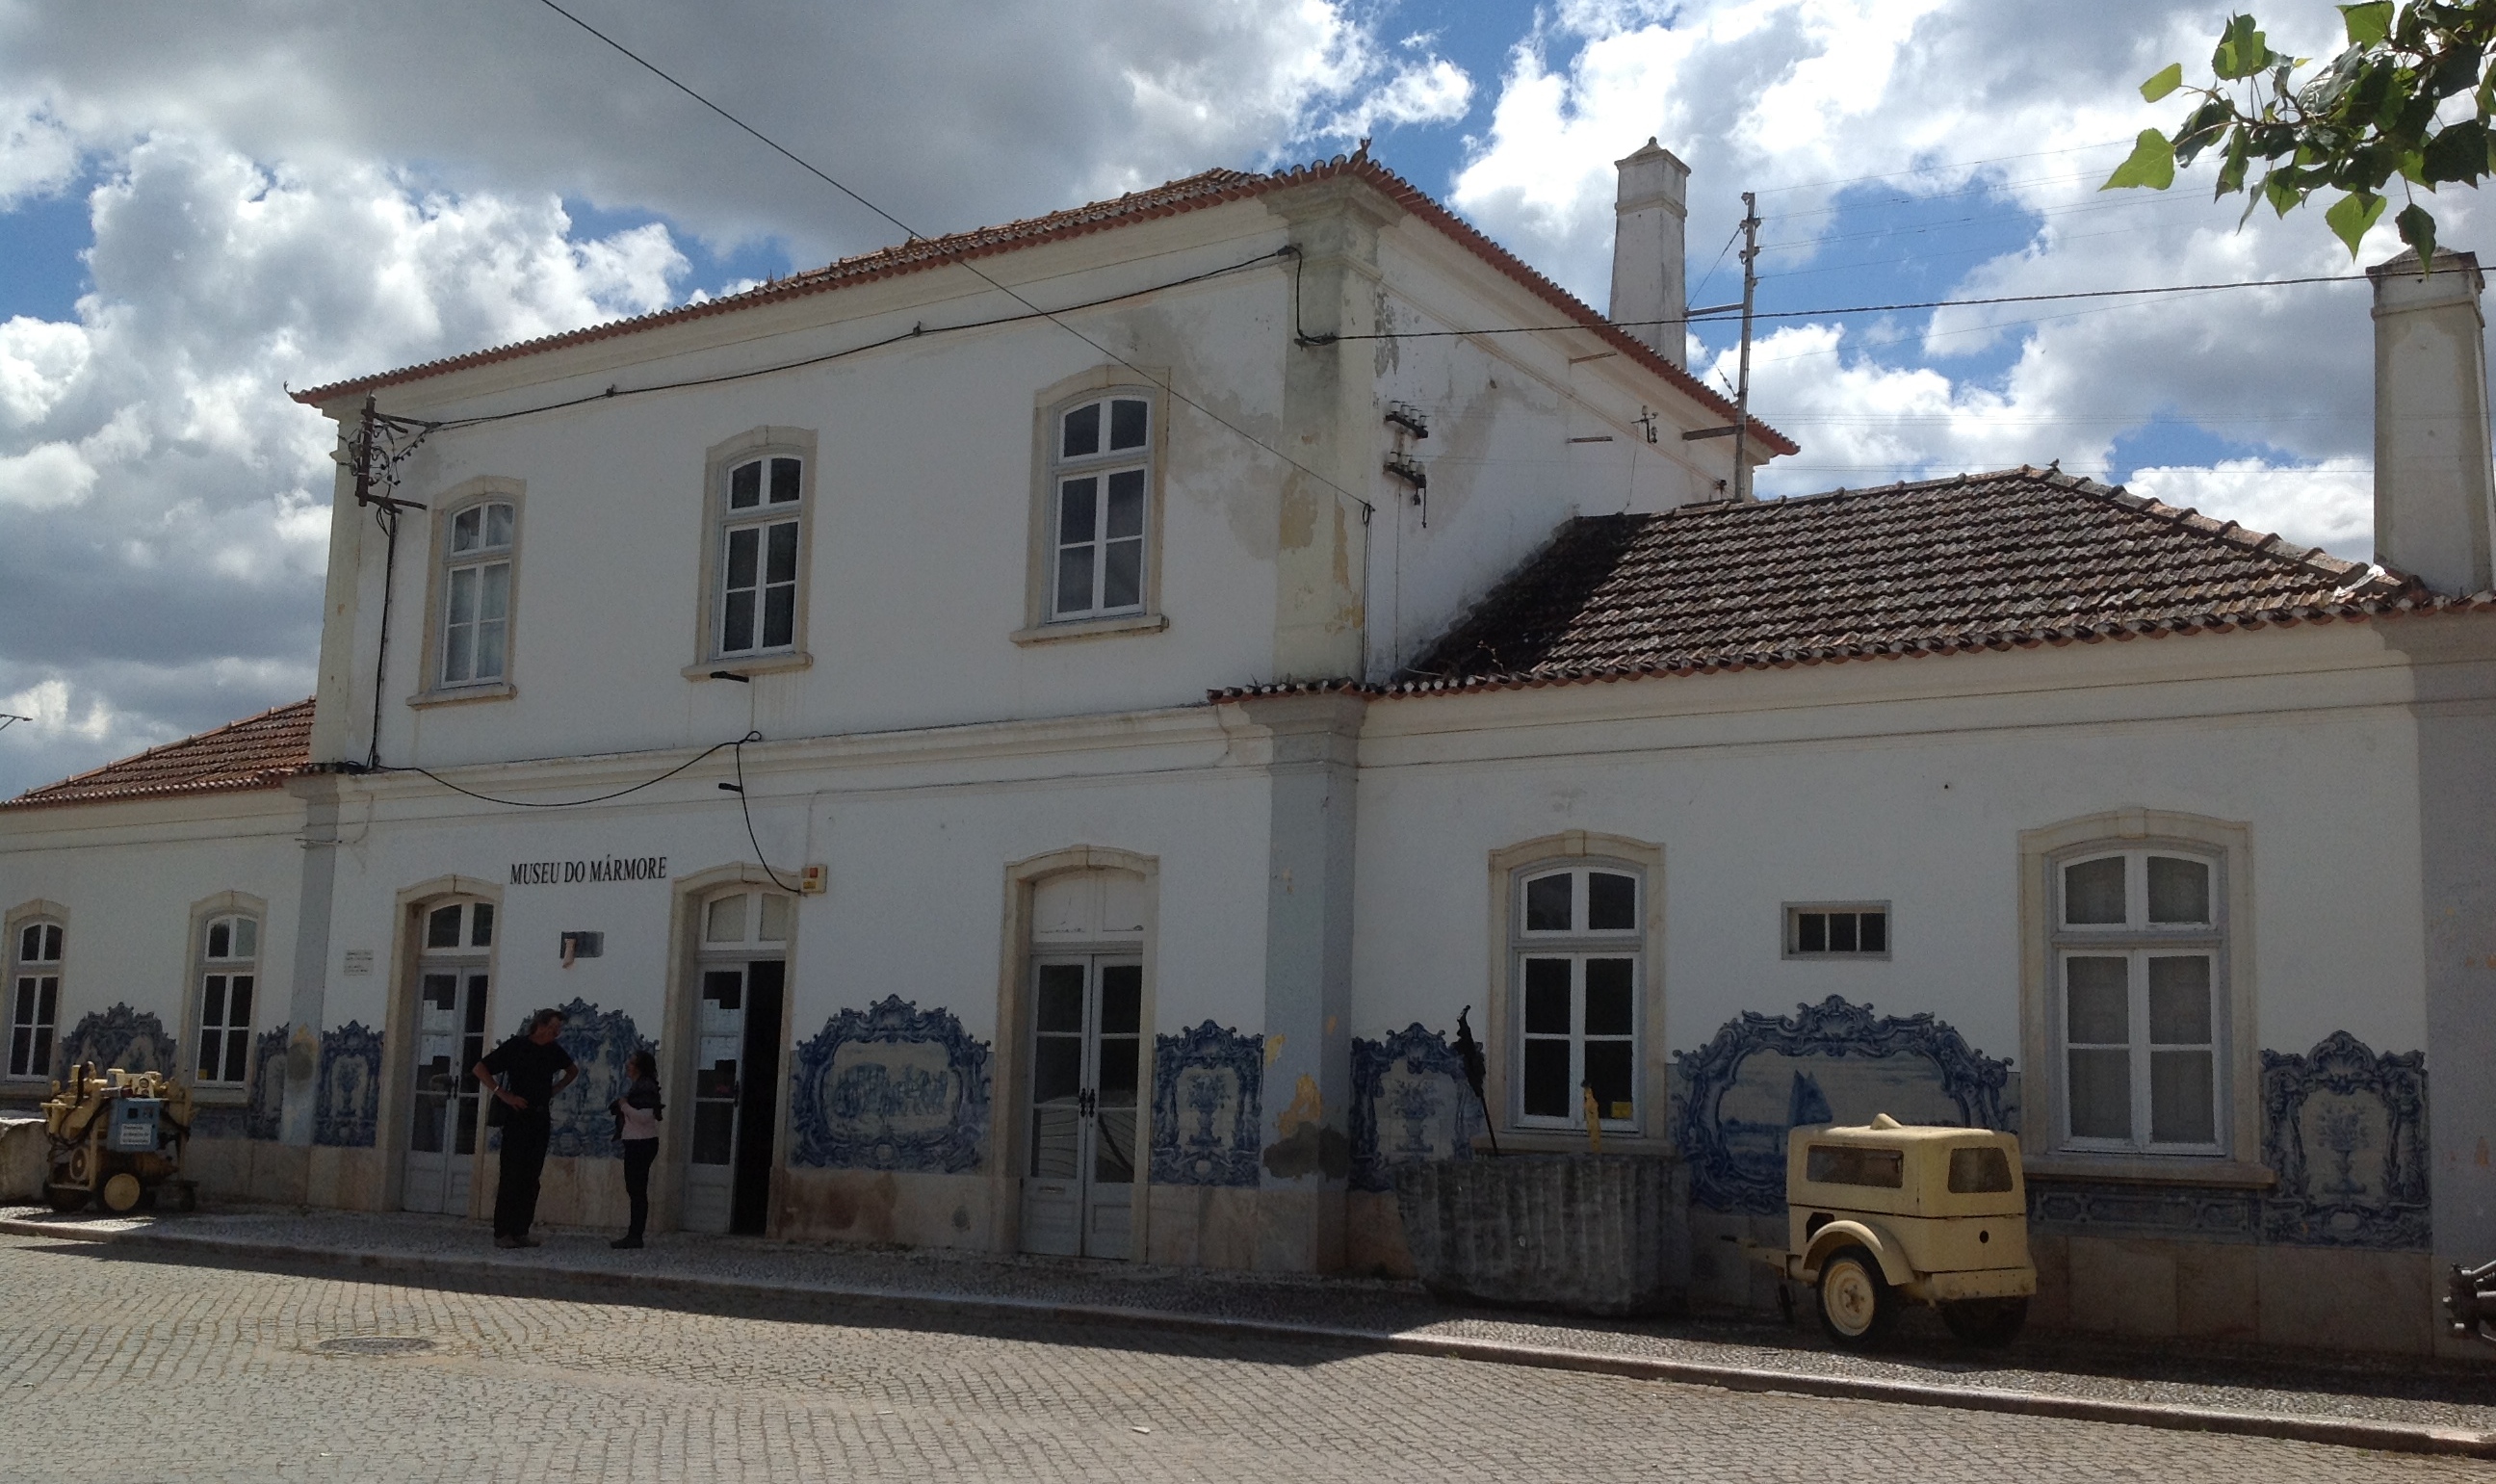 The Muse do Marmore, Vila Vicosa